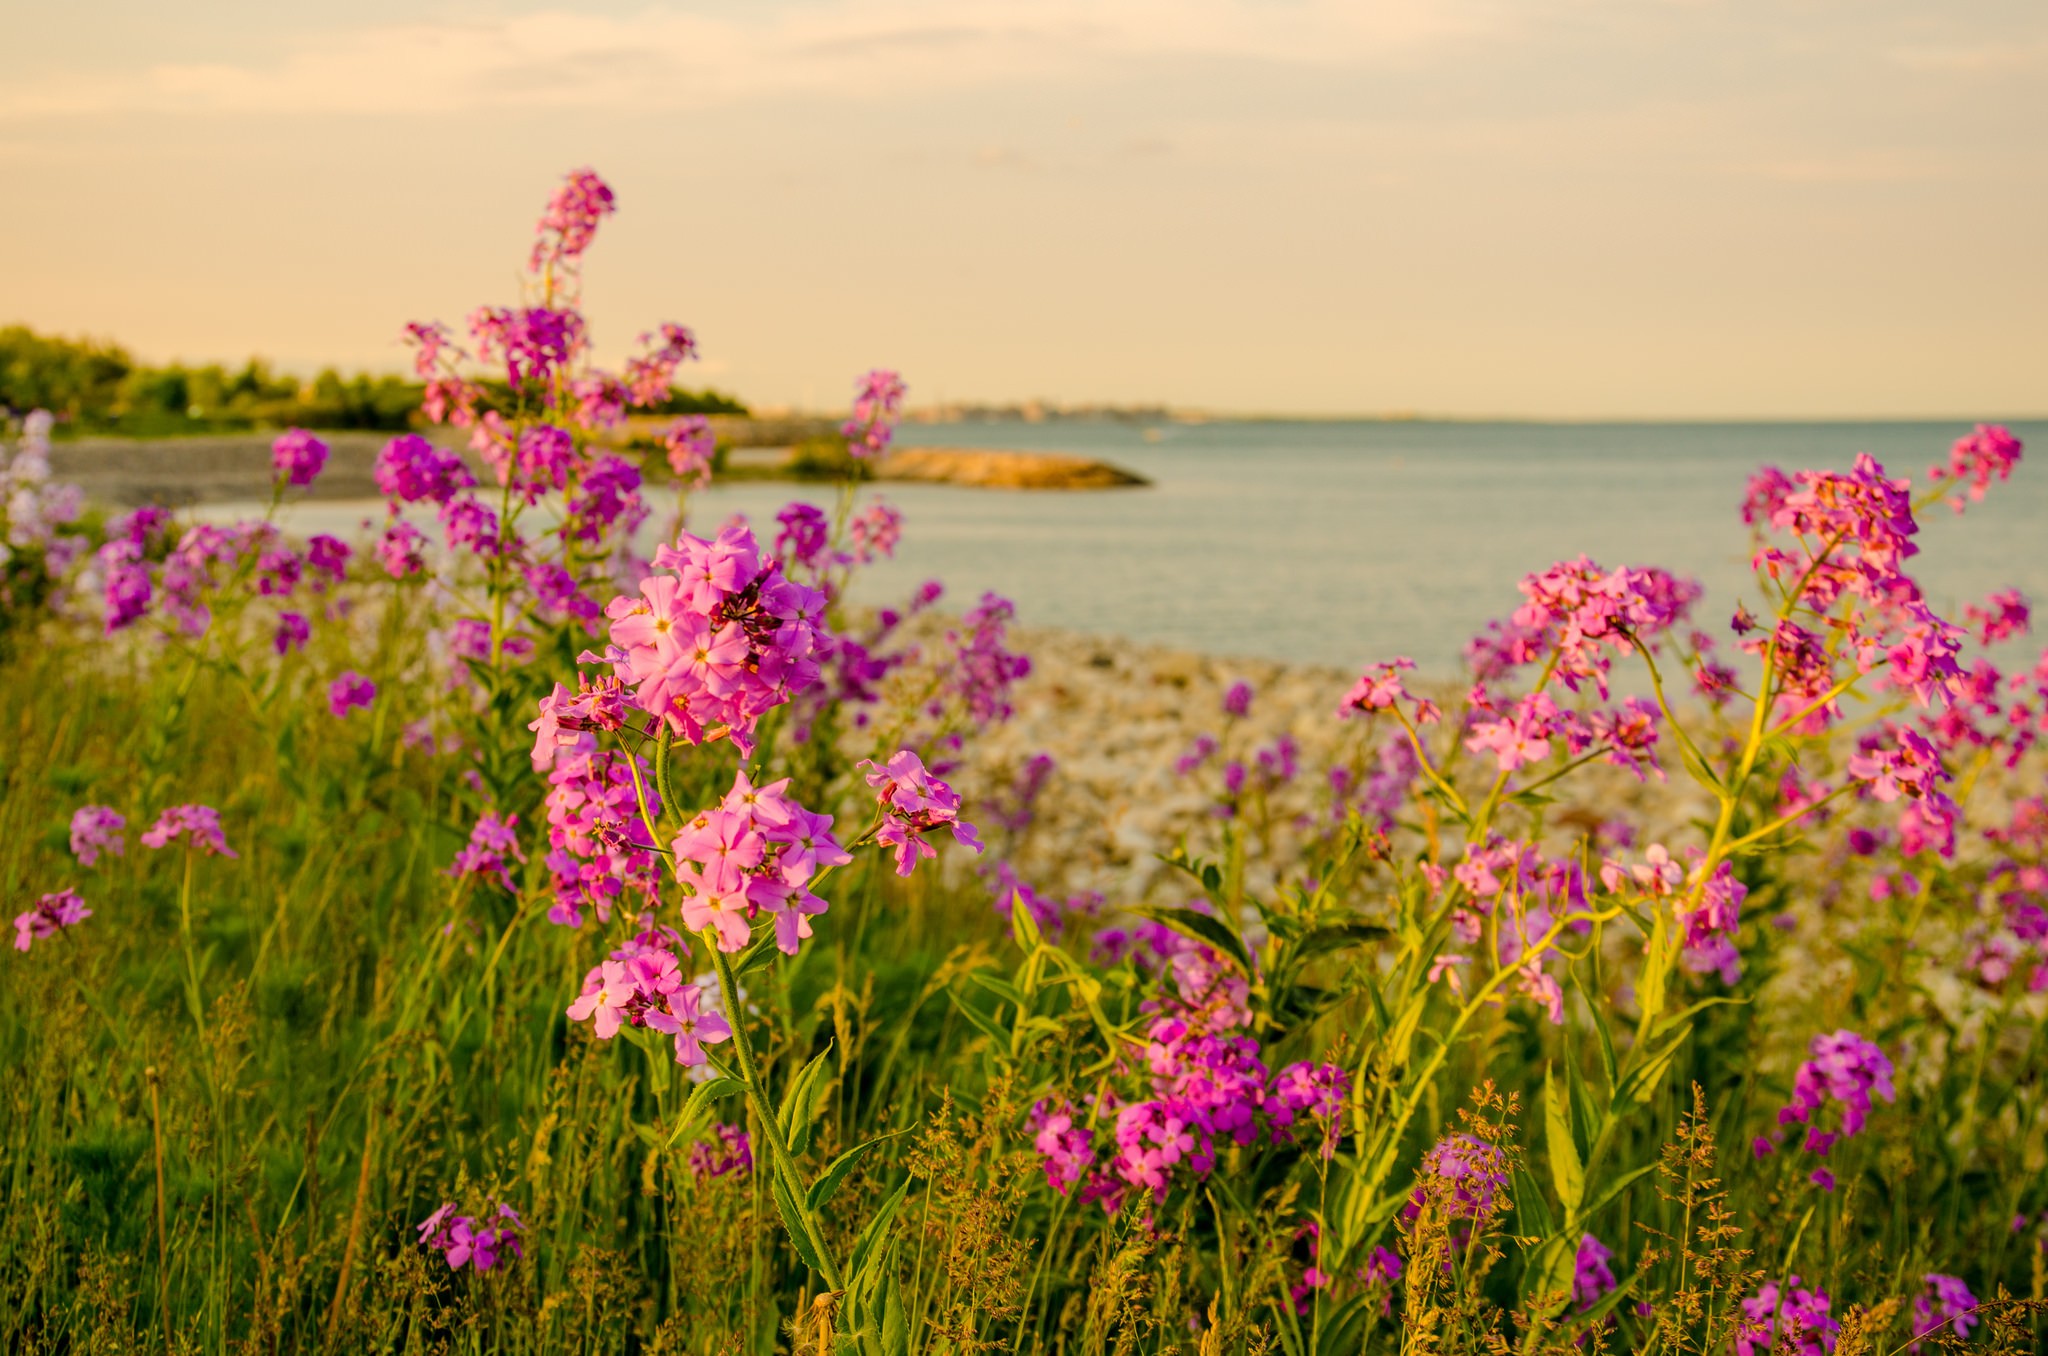 General 2048x1356 landscape sea flowers plants nature outdoors